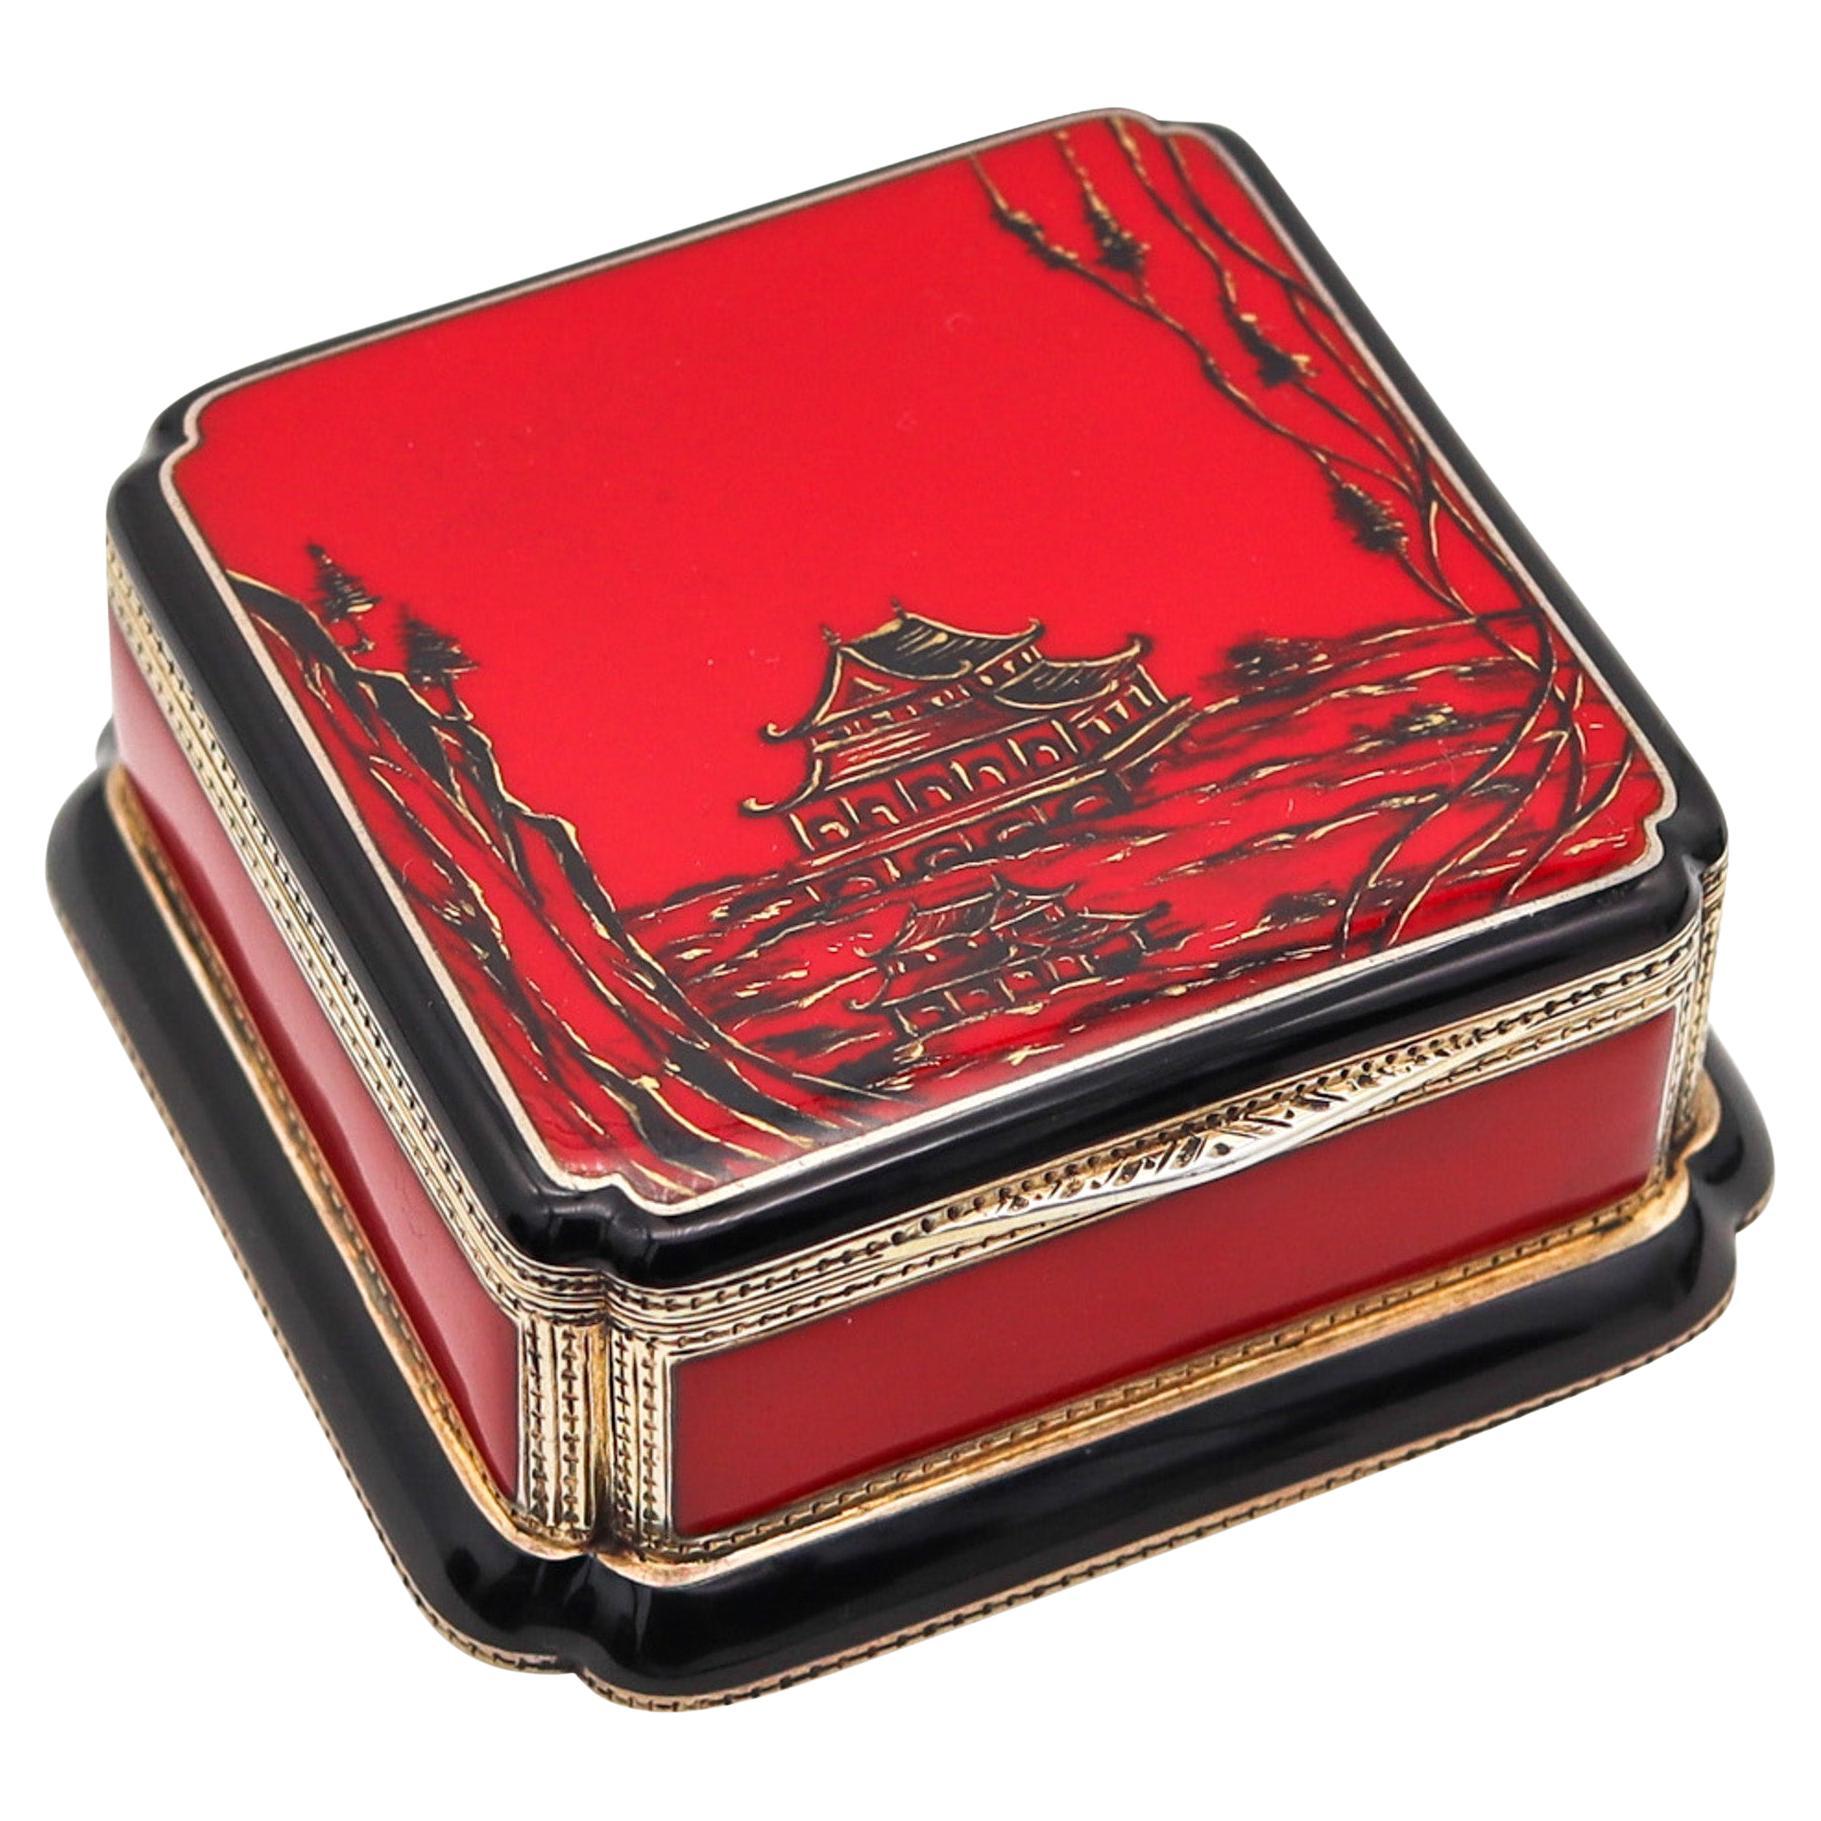 Boîte de chinoiserie Louis Kuppenheim 1925 émaillée rouge et noire et dorée 935 sterling